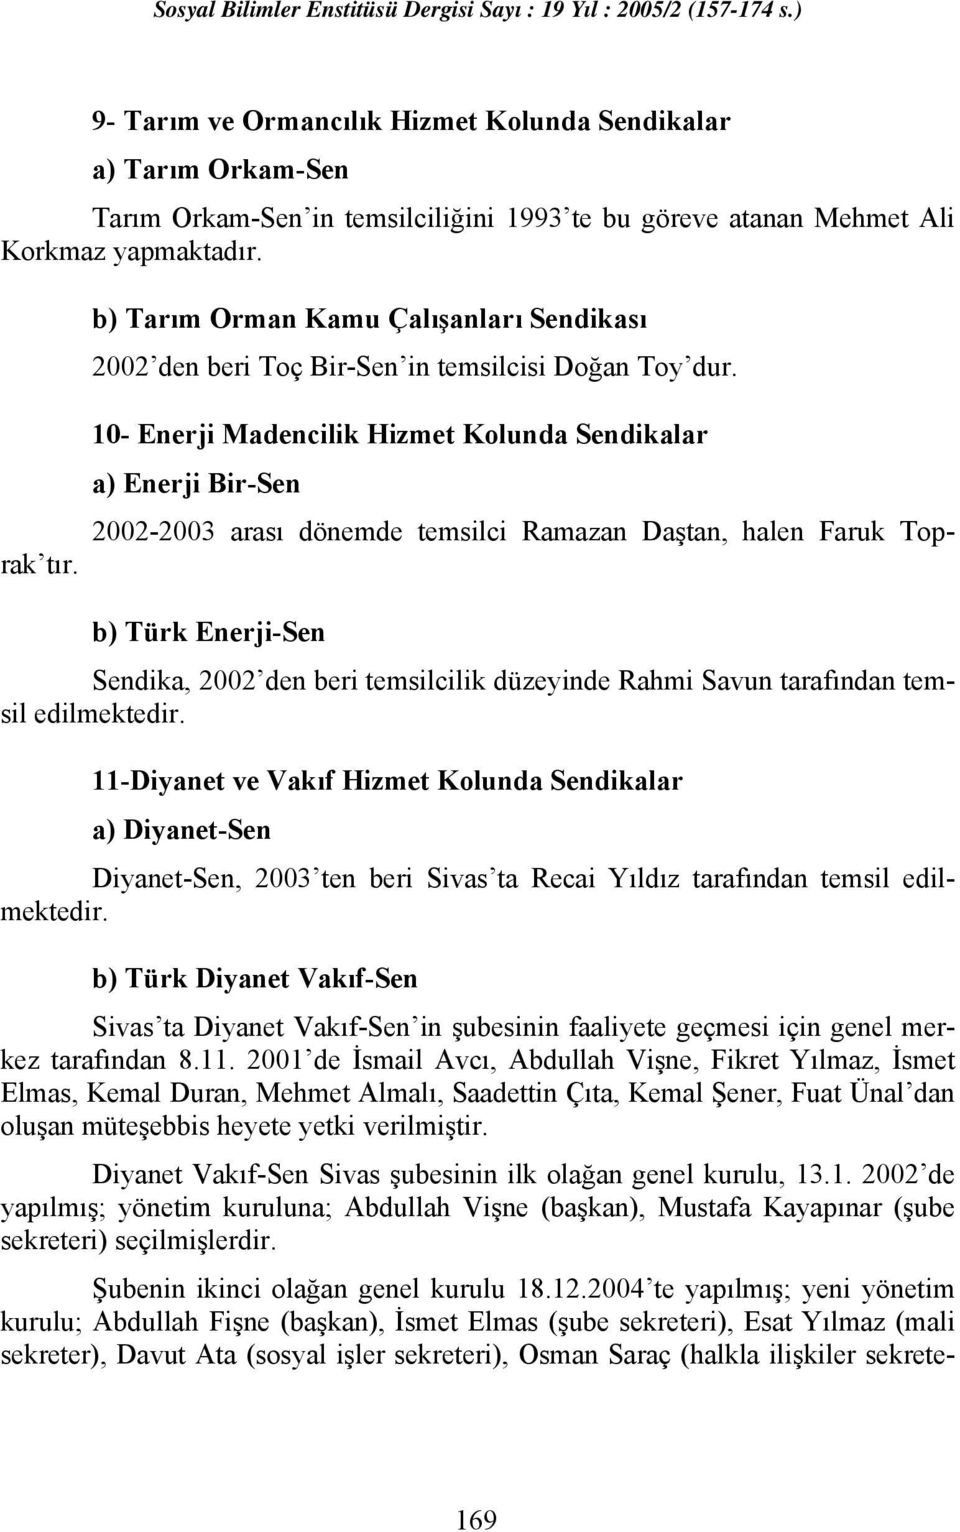 10- Enerji Madencilik Hizmet Kolunda Sendikalar a) Enerji Bir-Sen b) Türk Enerji-Sen Sendika, 2002 den beri temsilcilik düzeyinde Rahmi Savun tarafından temsil edilmektedir.